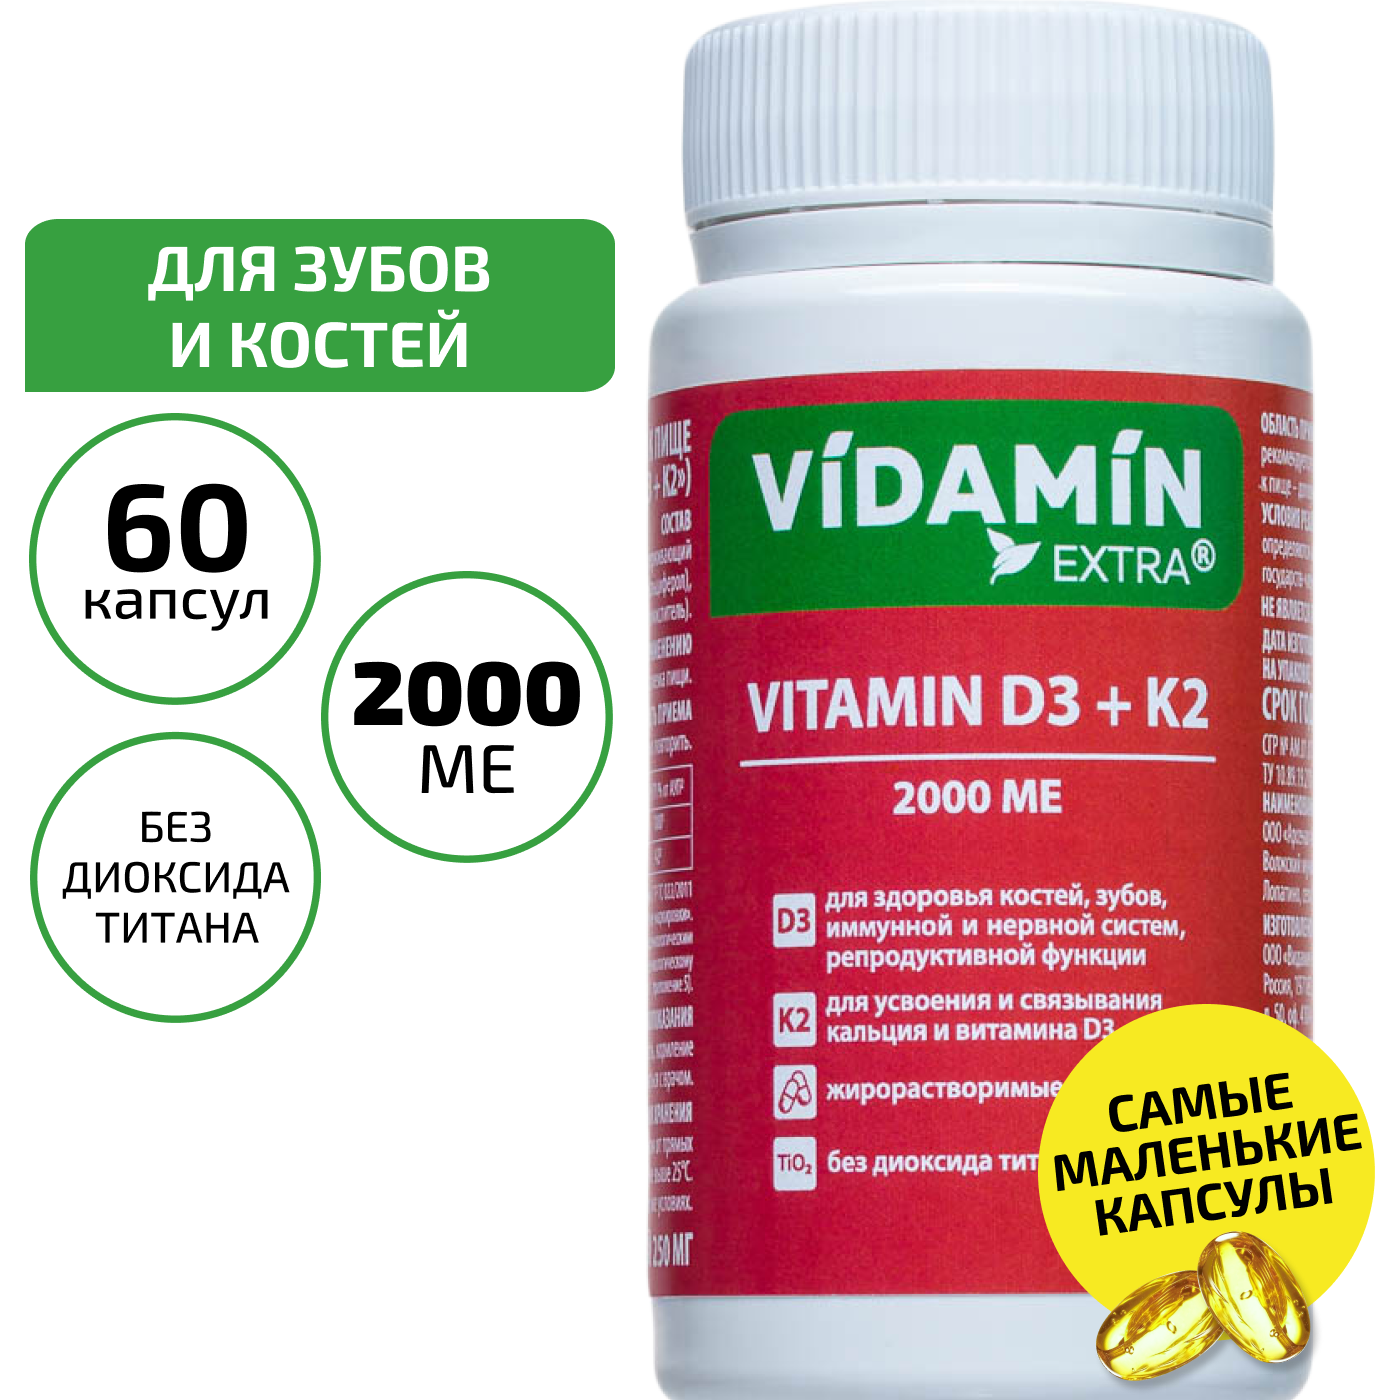 Витамин Д3 + К2 VIDAMIN EXTRA здоровая костная система 2000МЕ 250мг 60 капсул 1 уп